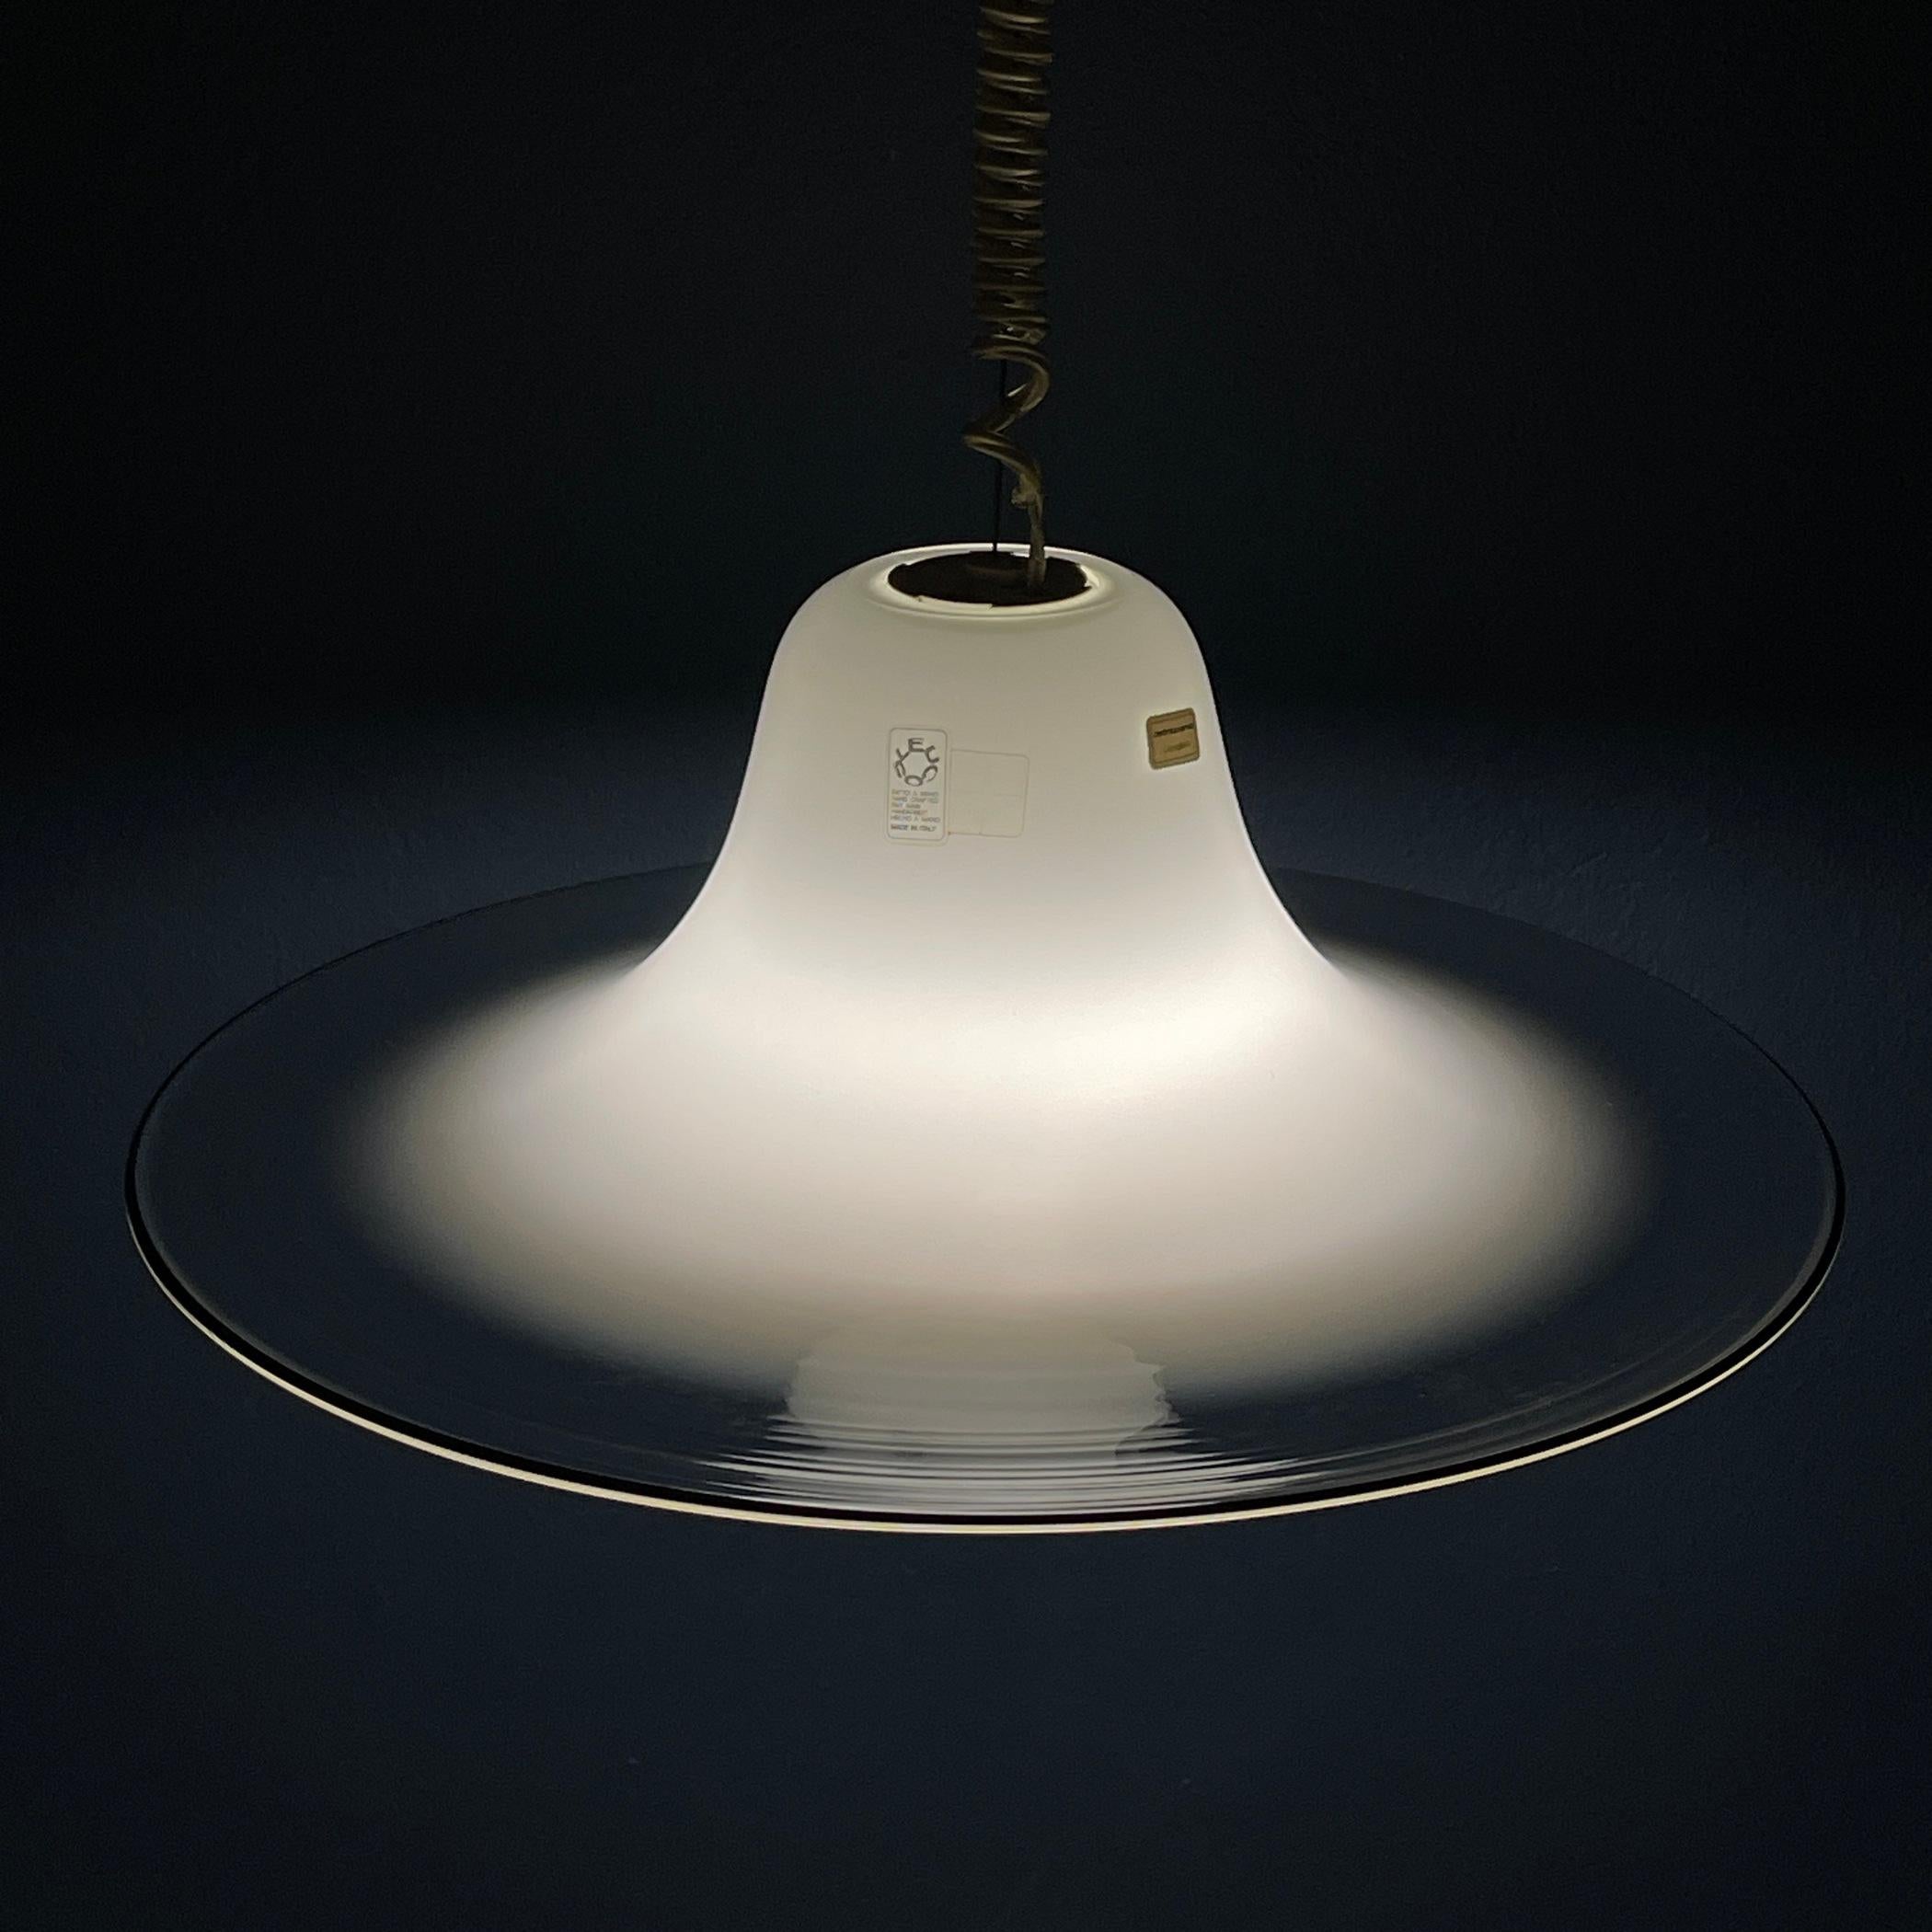 Wir präsentieren die wunderschöne Murano-Glaslampe 